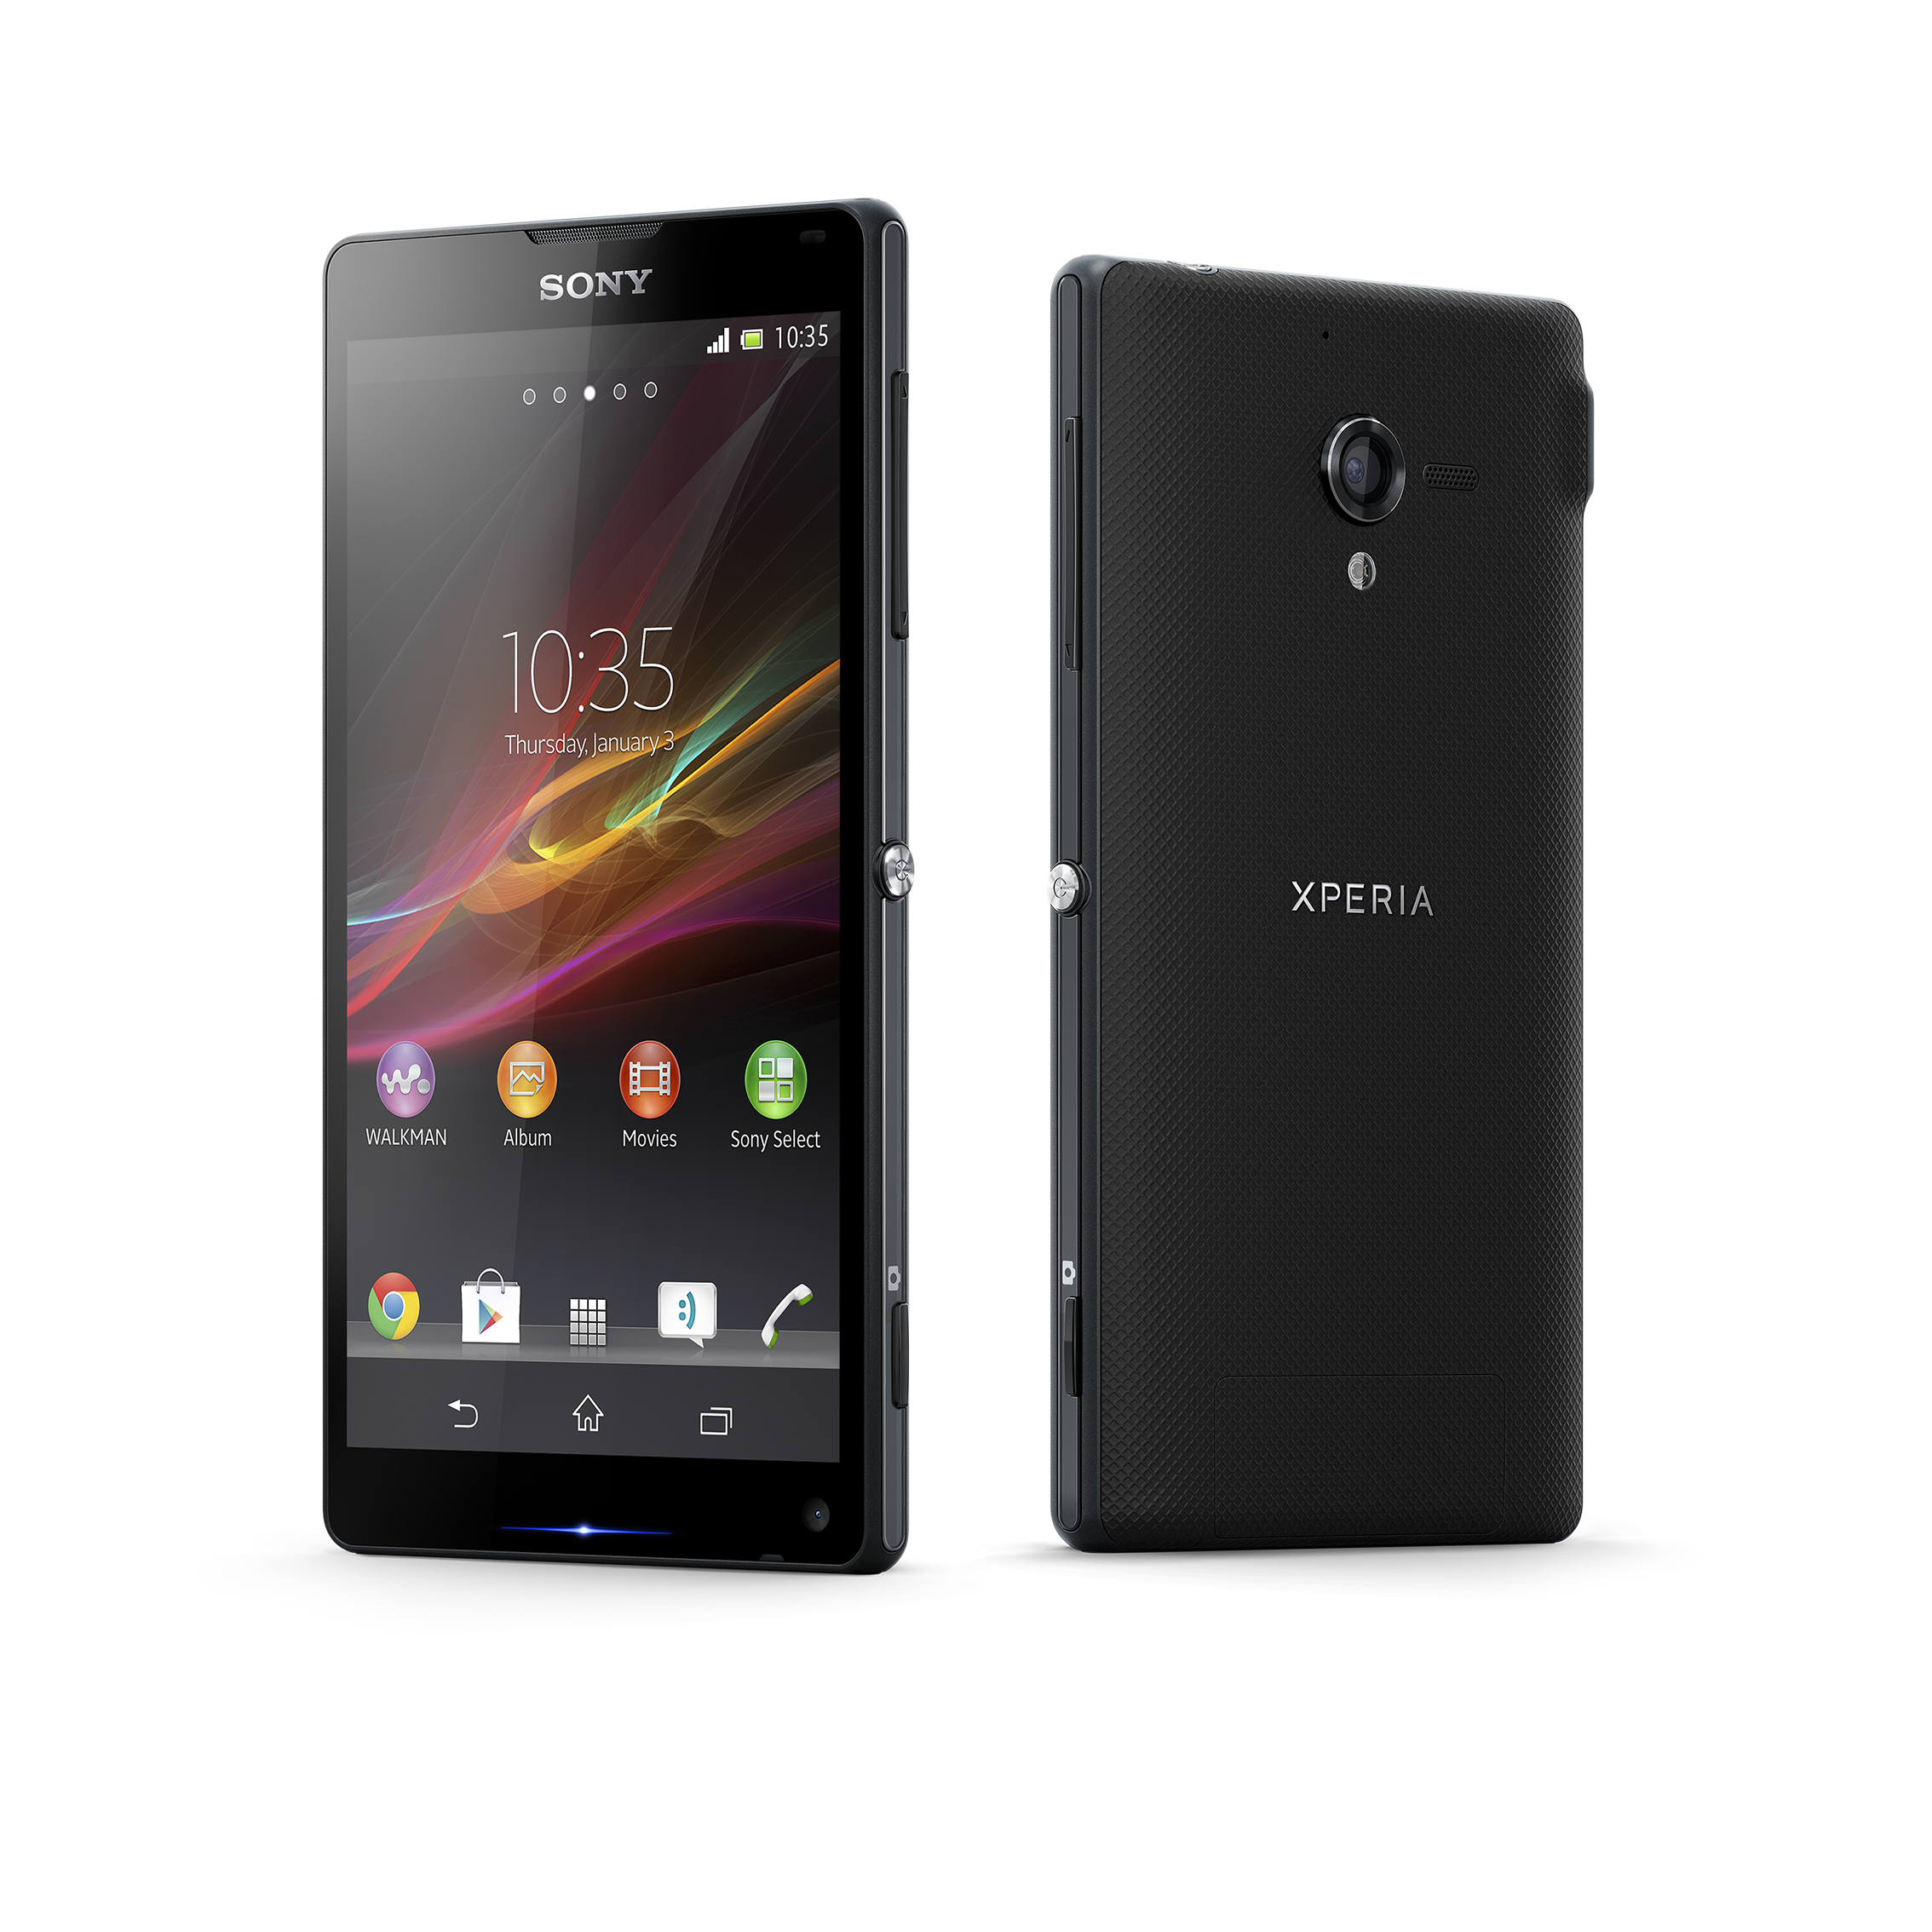 Novo smartphone topo de linha da Sony, o Xperia ZQ possui visor de 5 polegadas